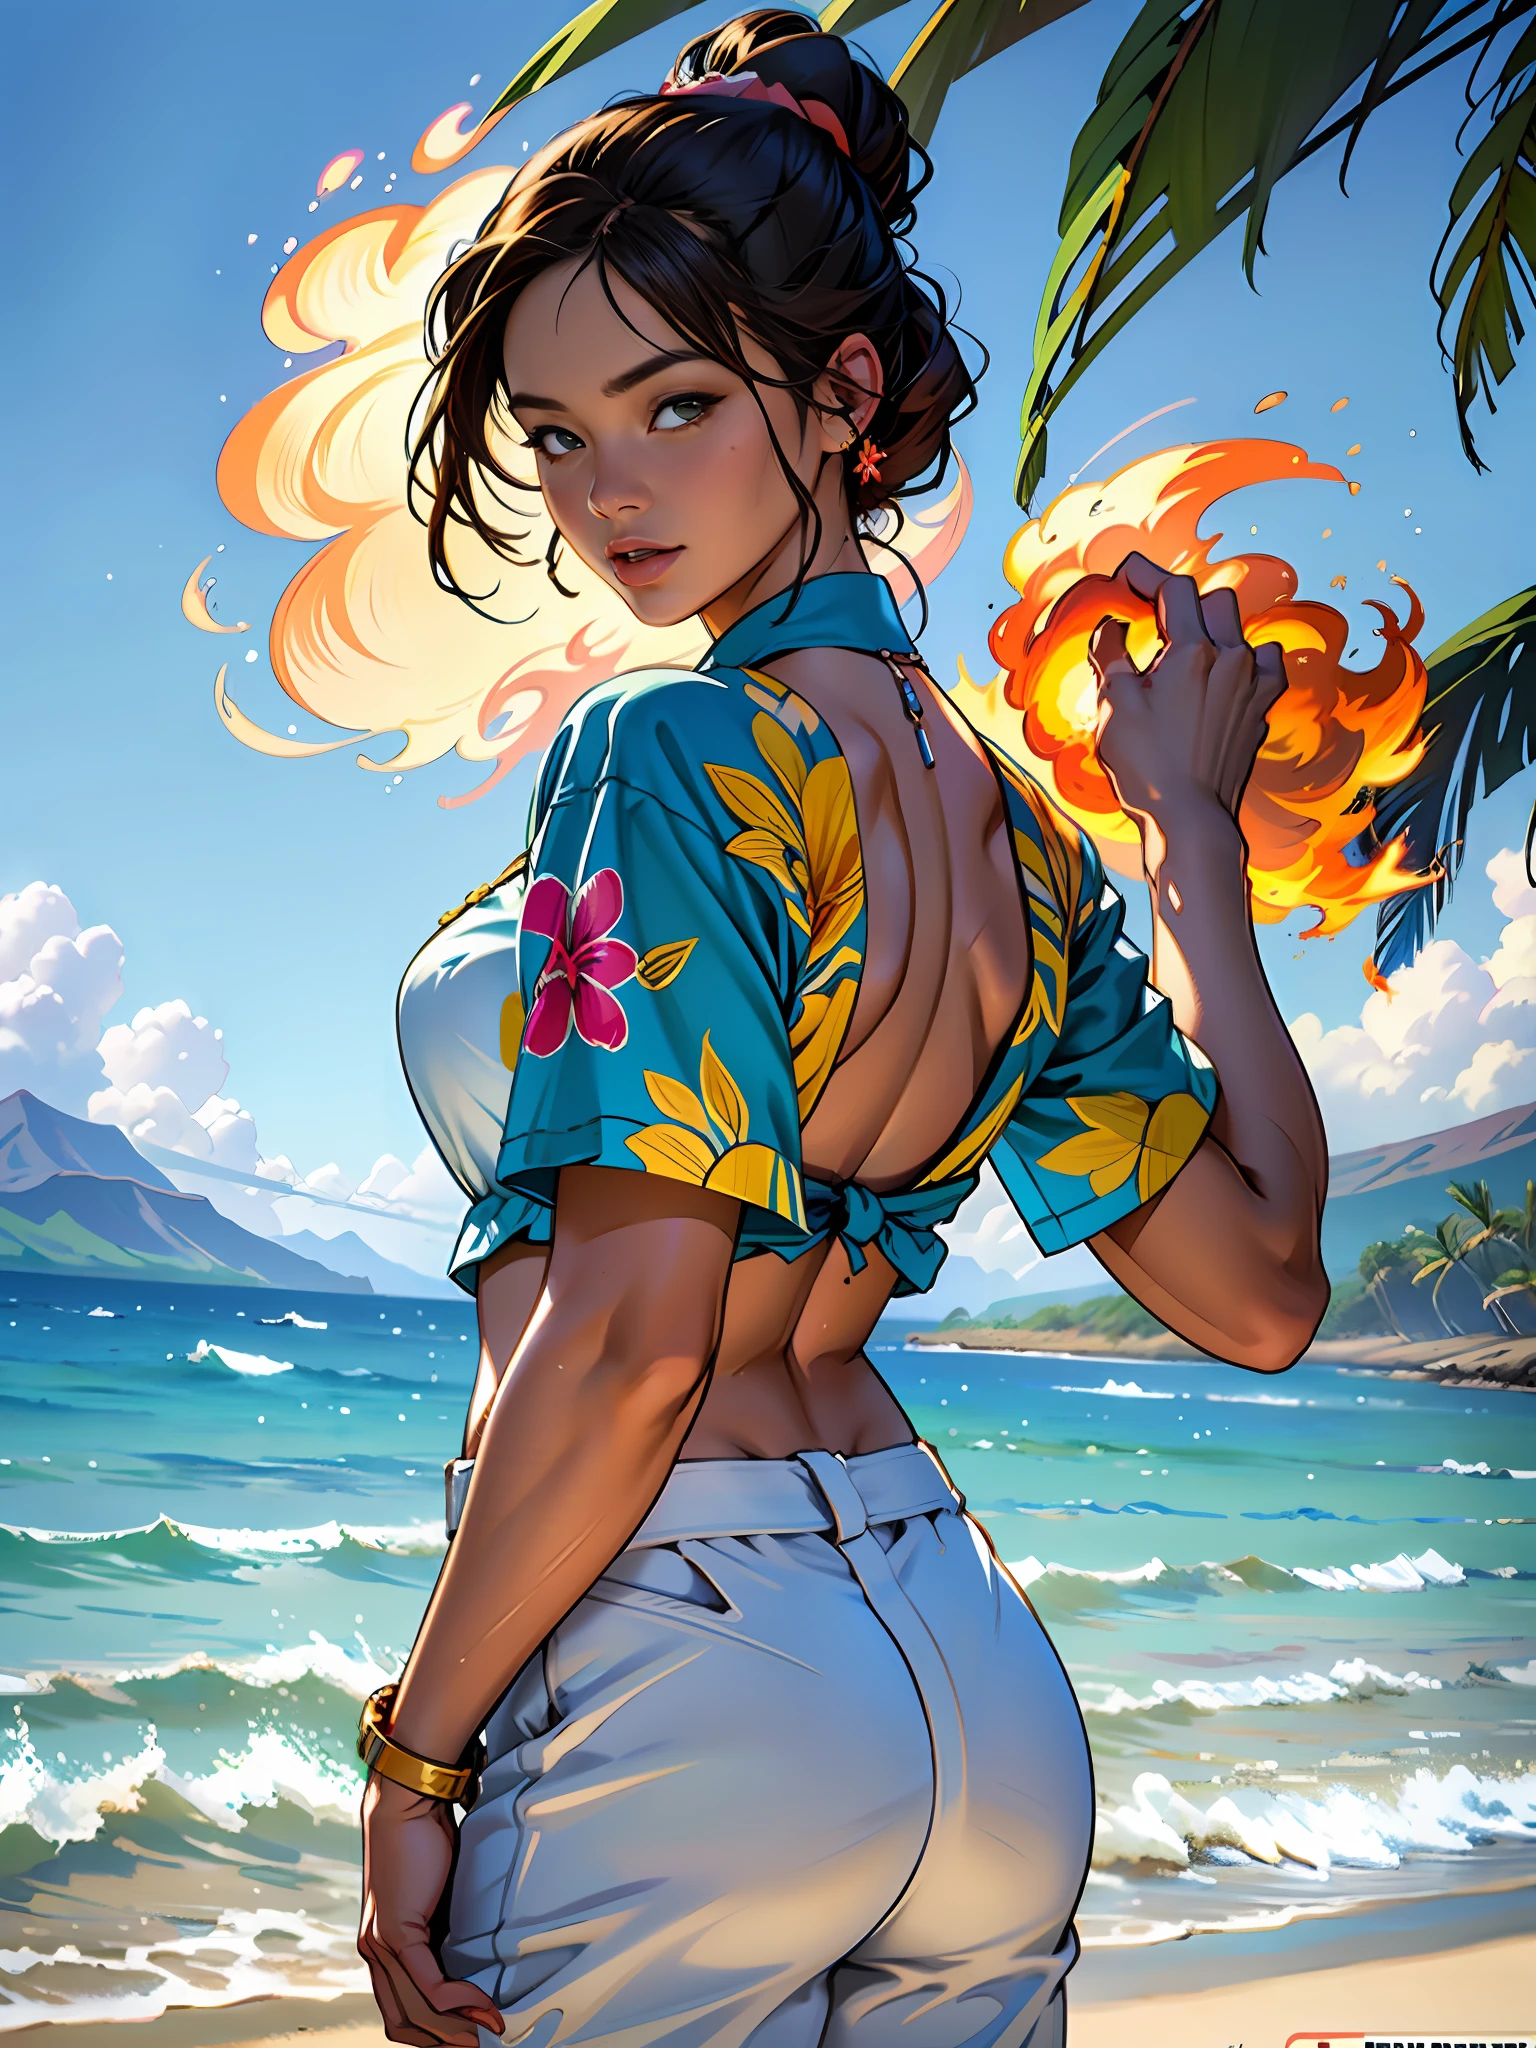 Hawaii, Lahaina, brennendes Feuer im Hintergrund, 1 Mädchen malt aus der Wassersicht, Stil von Jaime Frias, beste Qualität, Realistisch, preisgekrönte Illustration in Farbe, (Kompliziertes Detail: 1.2), (Feines Detail)